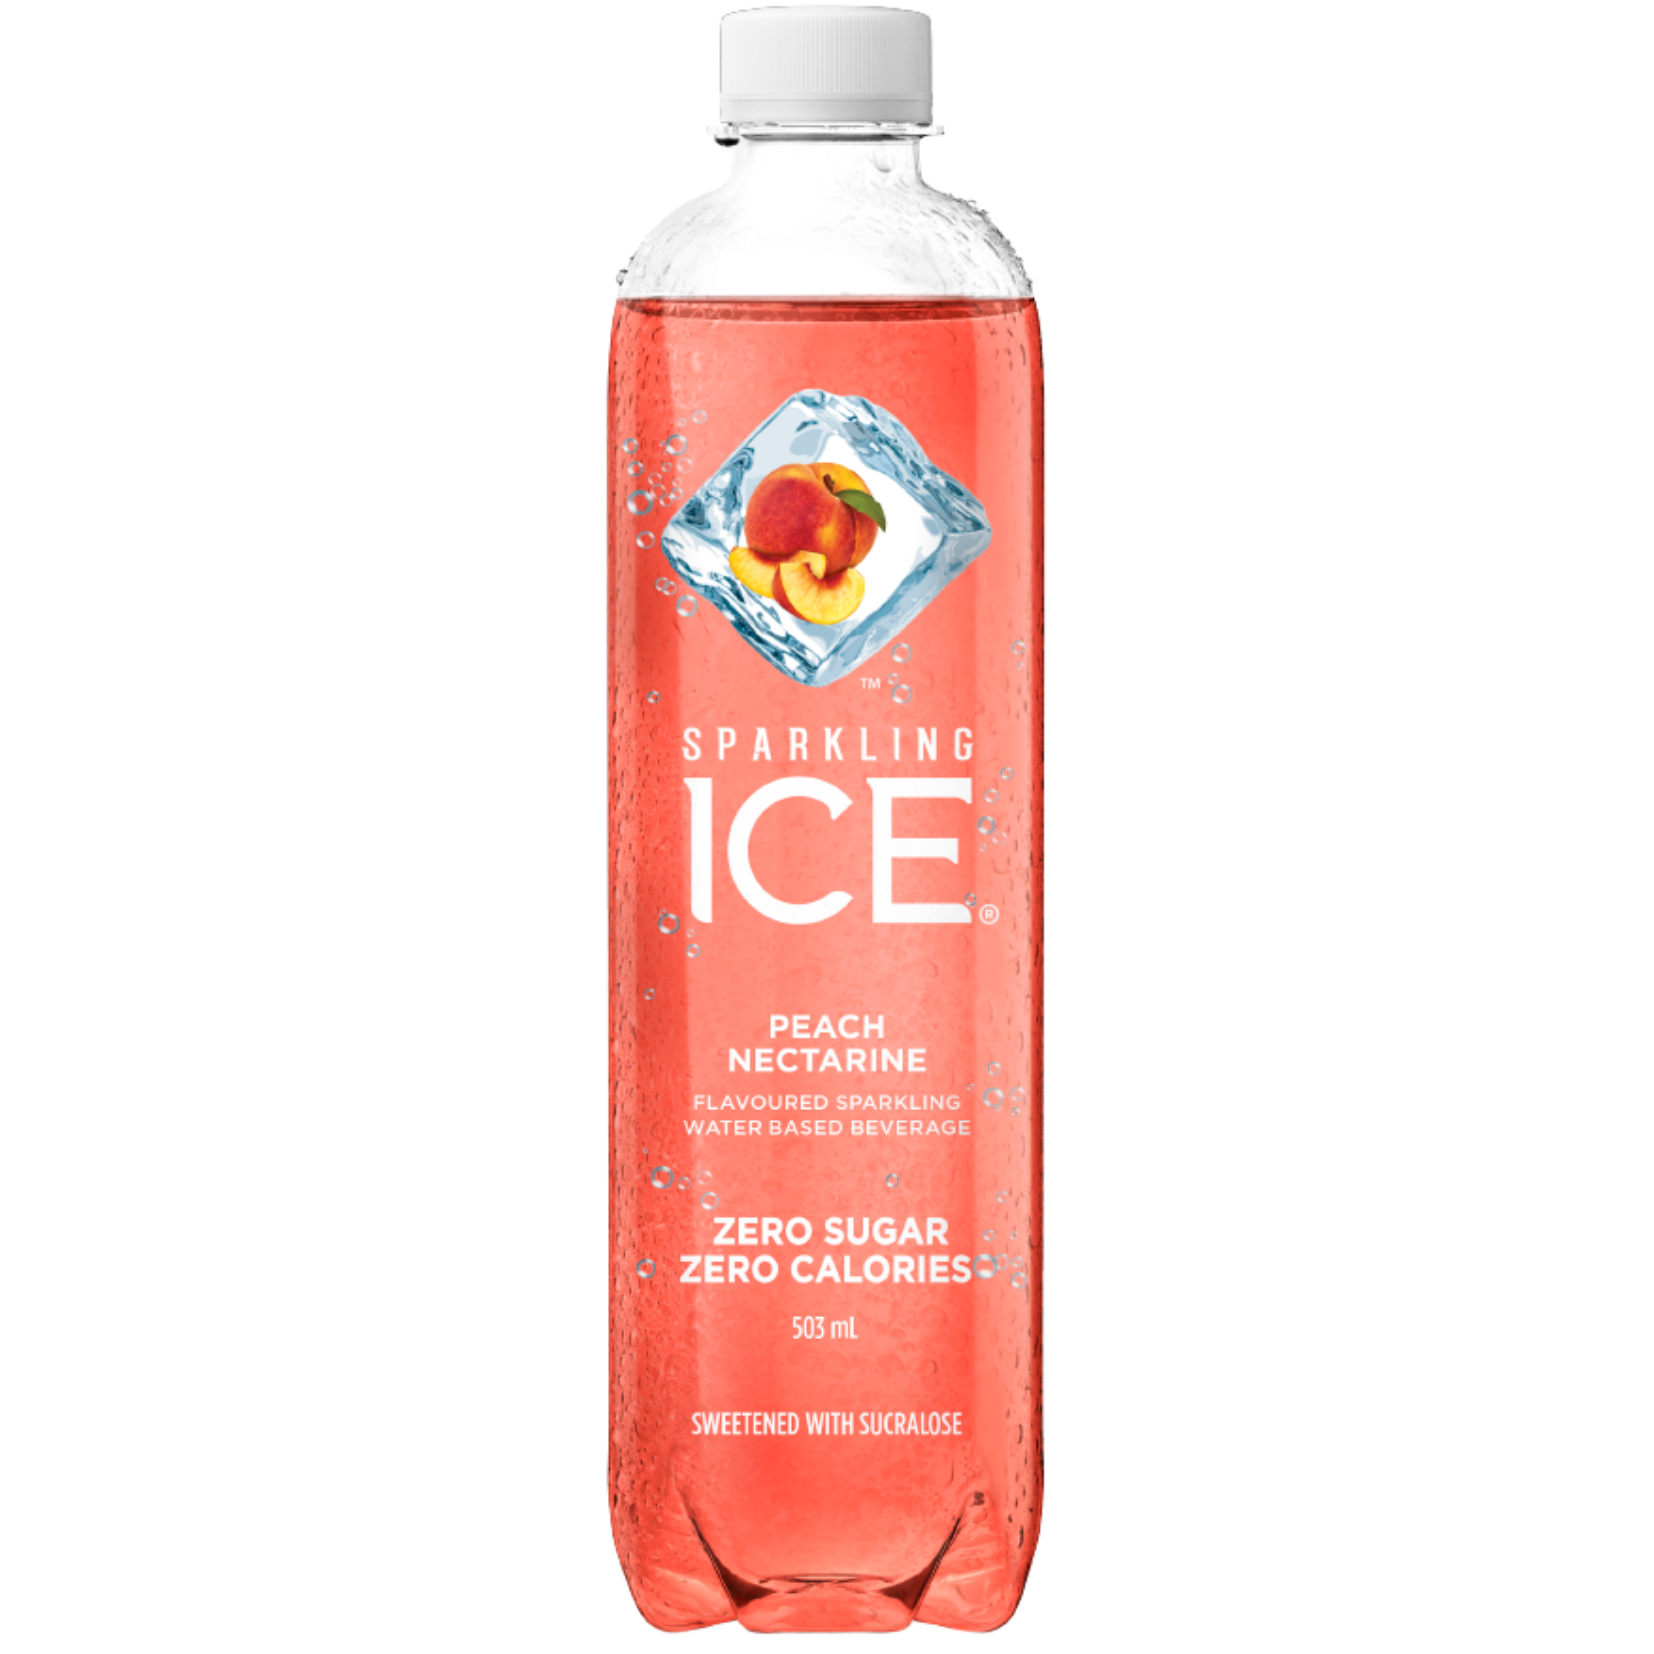 Sparkling Ice Peach Nectarine Sparkling Water 503ml